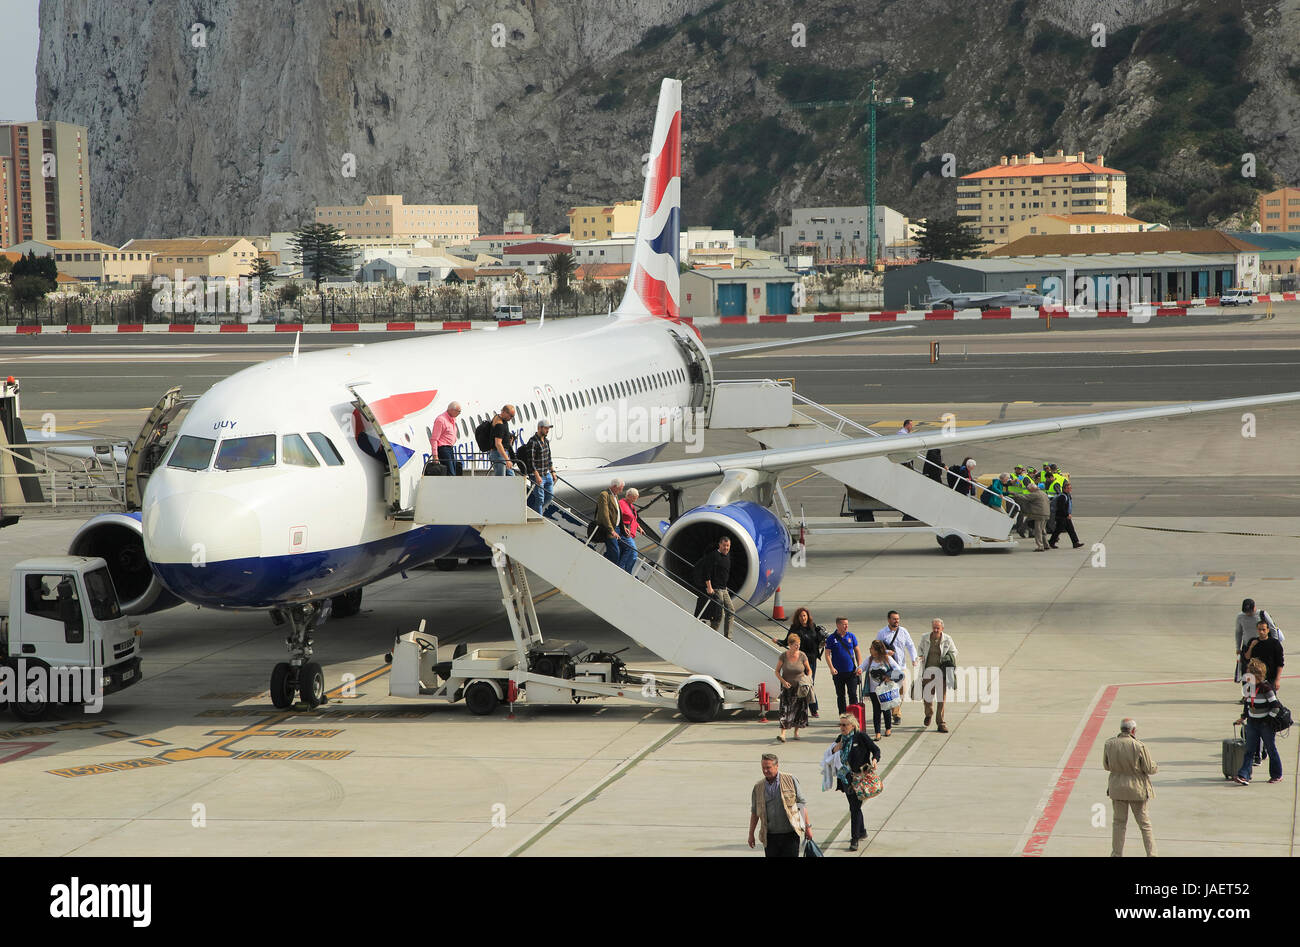 British Airways piano aeroporto internazionale con il Rock in background, Gibilterra, Europa meridionale Foto Stock